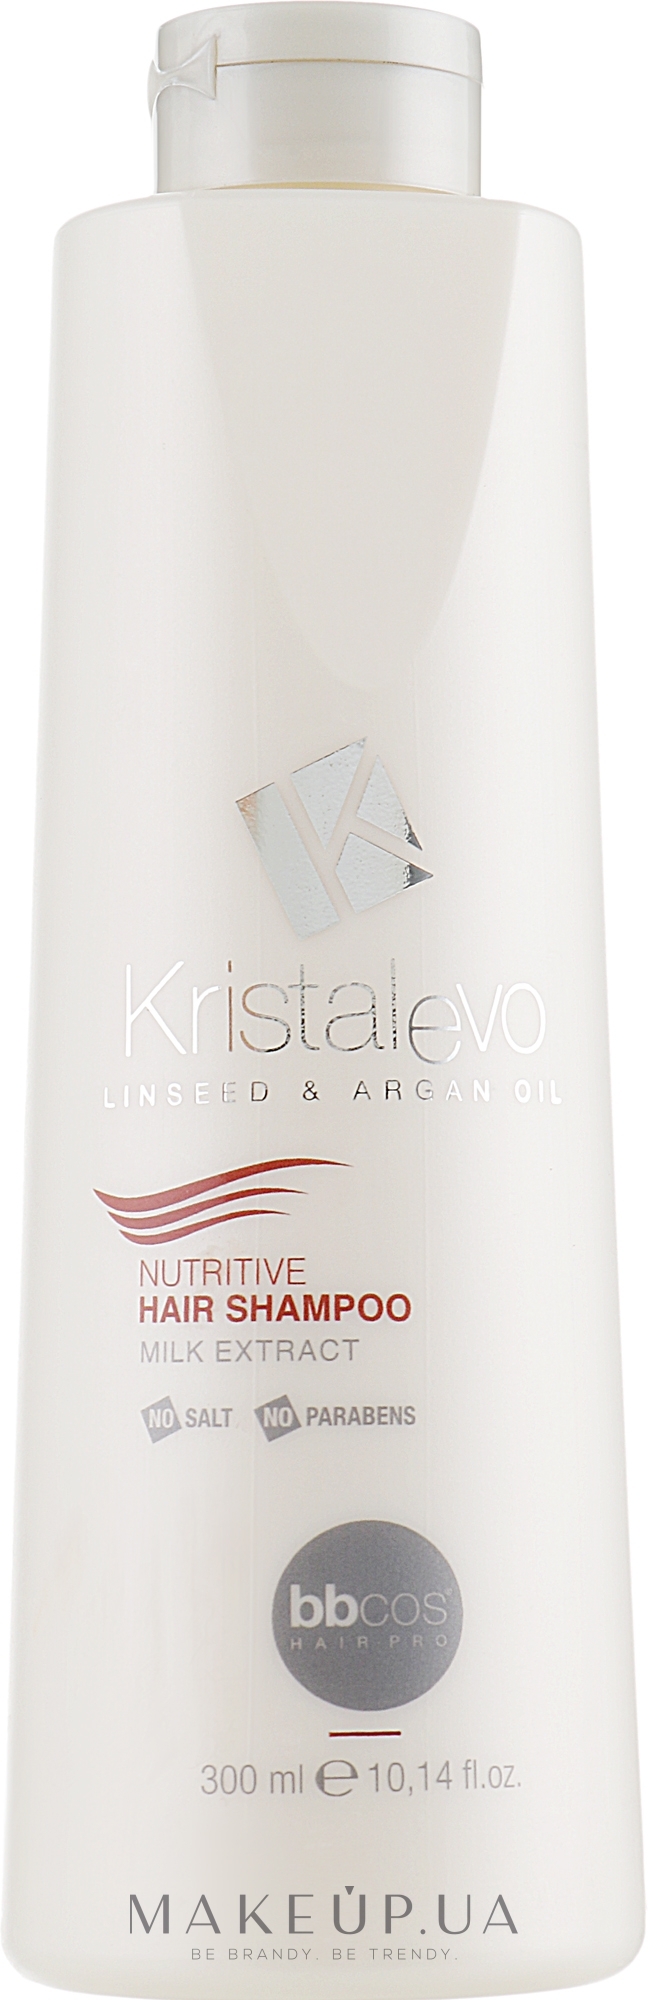 Шампунь для волос, питательный - Bbcos Kristal Evo Nutritive Hair Shampoo — фото 300ml